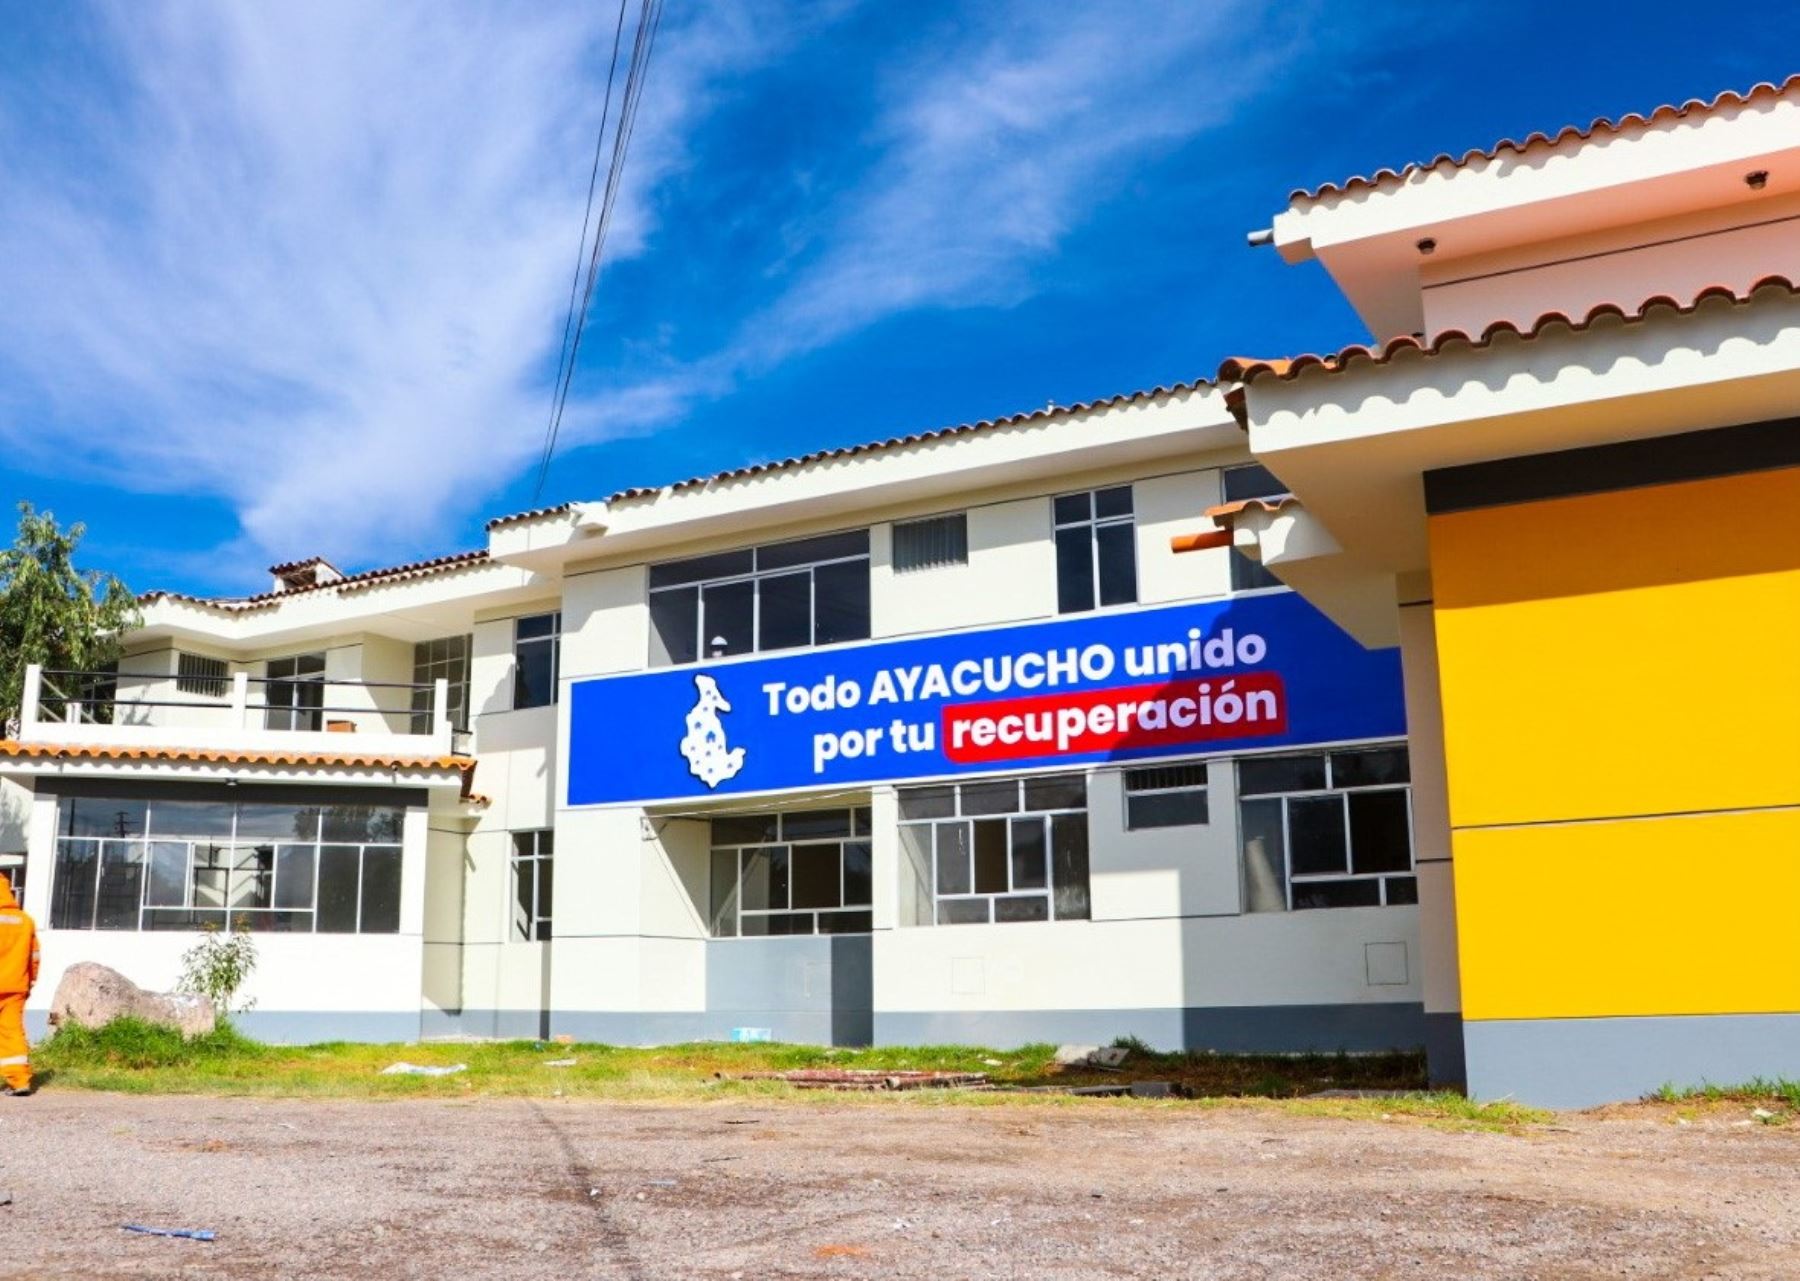 Ayacucho pone en funcionamiento hoy el nuevo hospital de emergencias covid-19, que atenderá a pacientes contagiados con esta enfermedad. ANDINA/Difusión